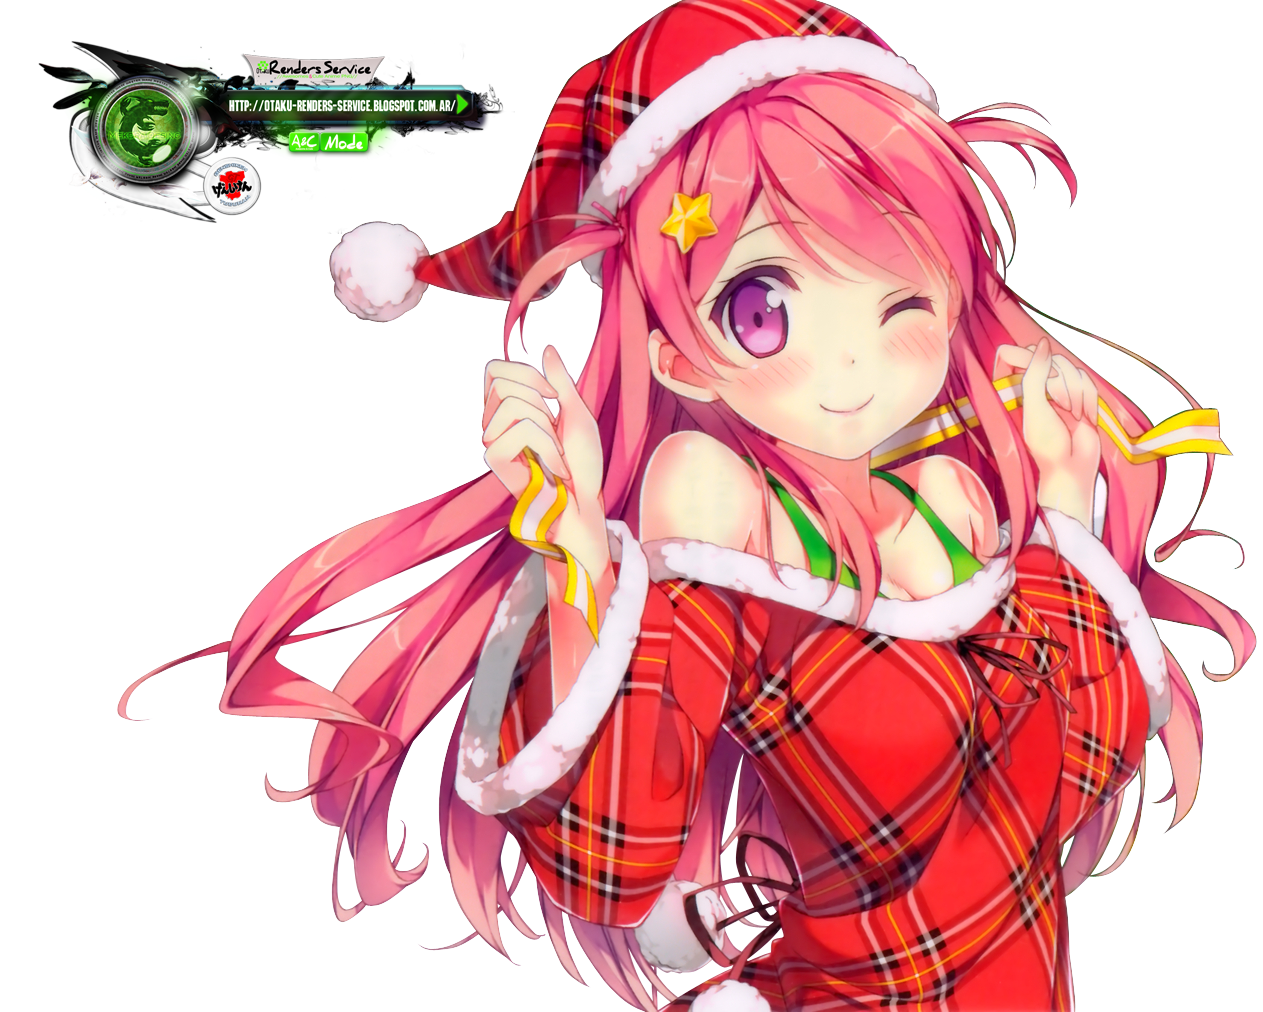 Christmas Anime PNG Image High Quality PNG Image